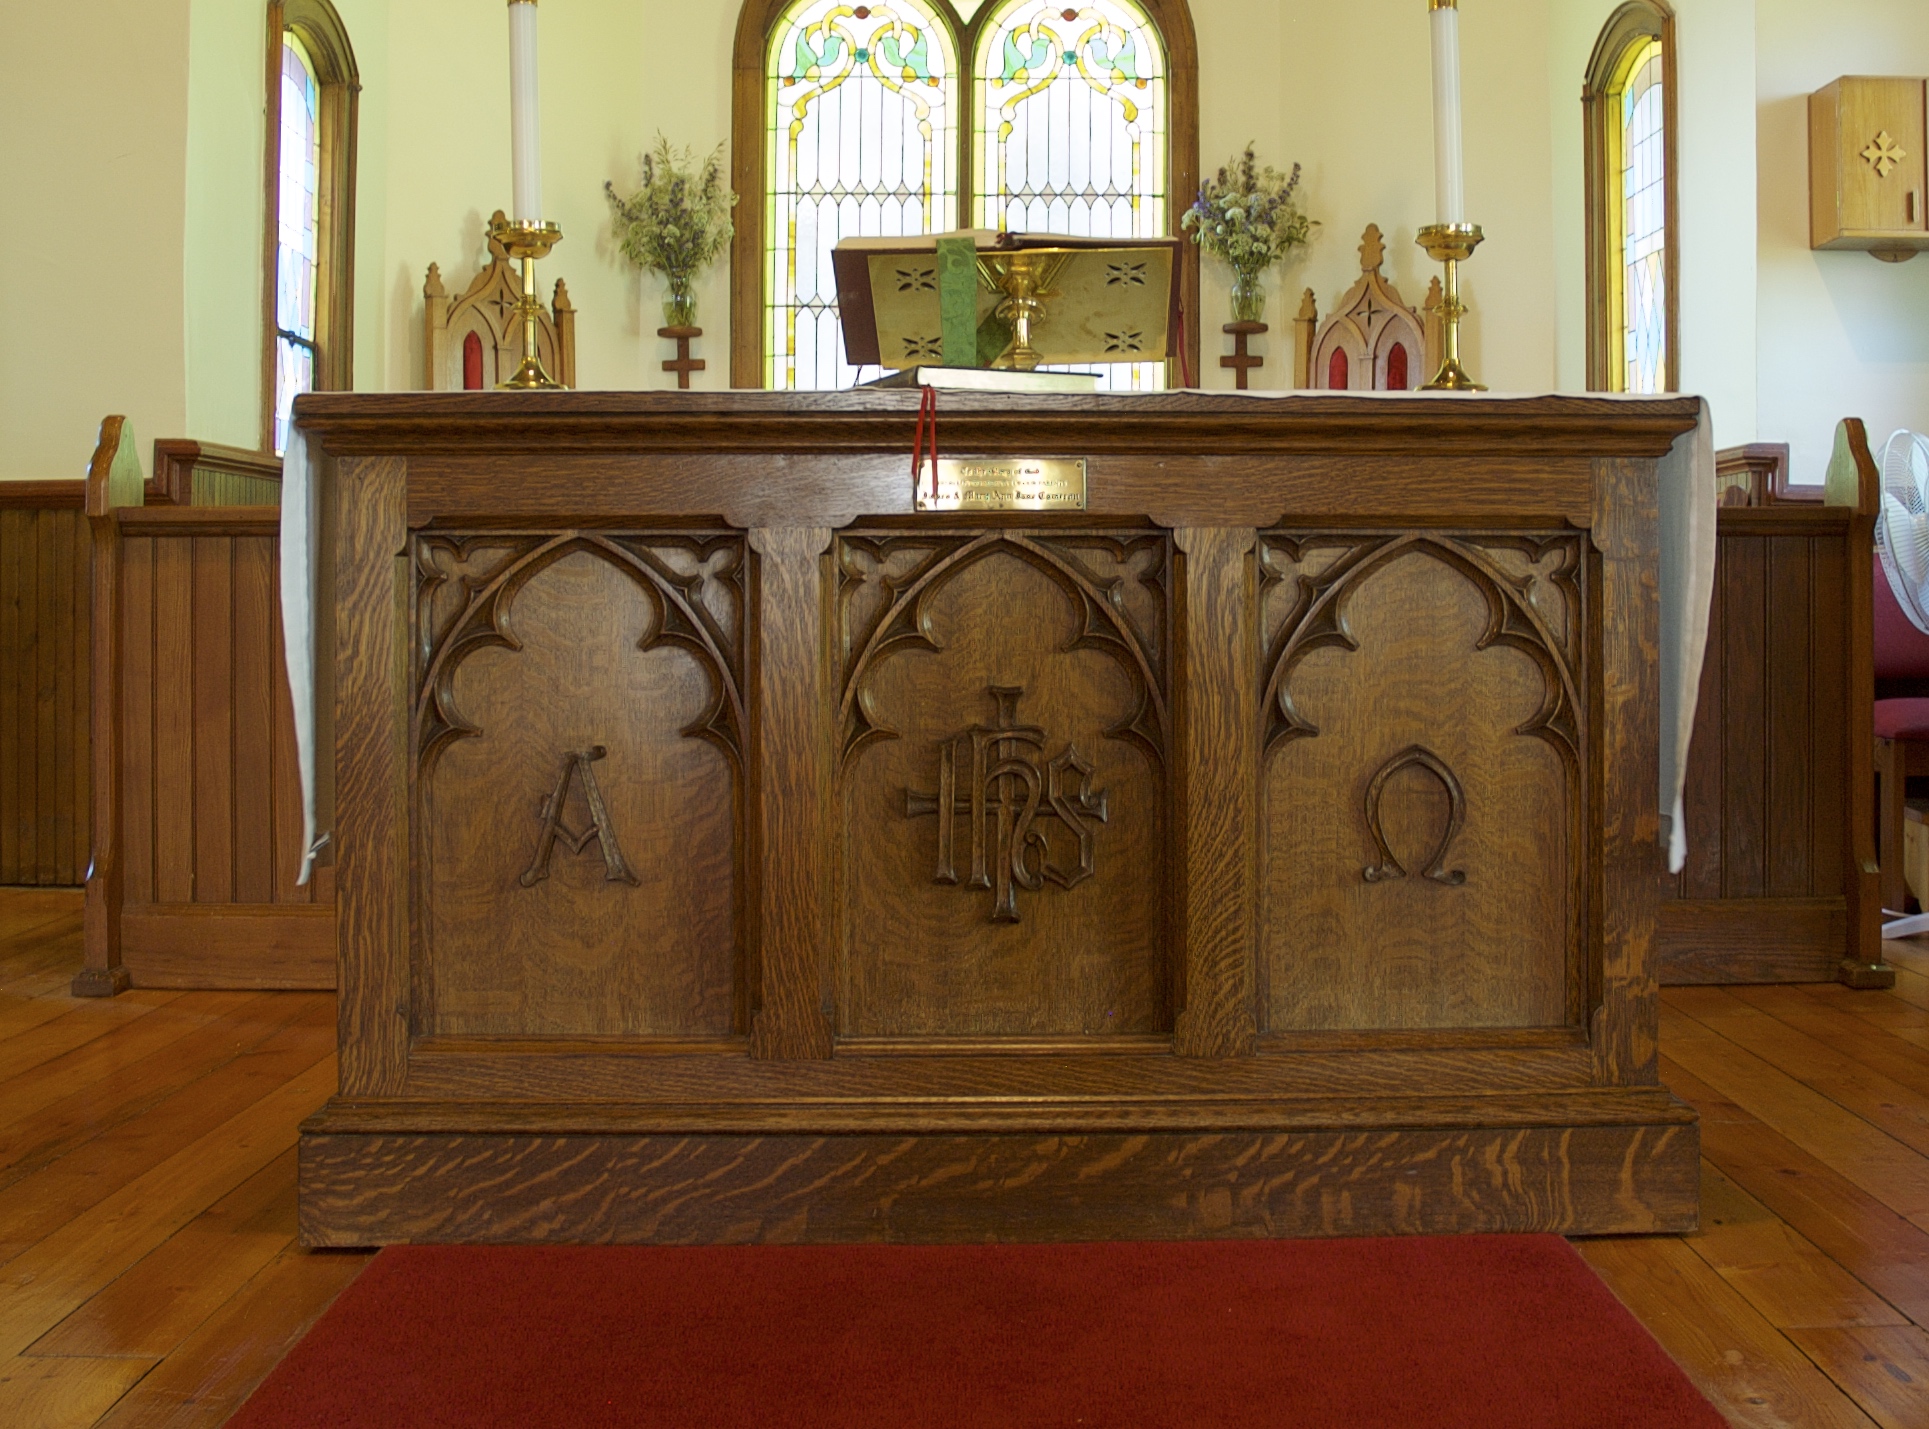 Table de communion ou autel en chêne. Sur le devant, trois panneaux sont sculptés dans le bois. Le panneau de gauche porte le symbole A pour alpha. Le panneau du milieu porte les armoiries de l'Église d'Angleterre. Le panneau de droite présente une symbole d'Omega. 